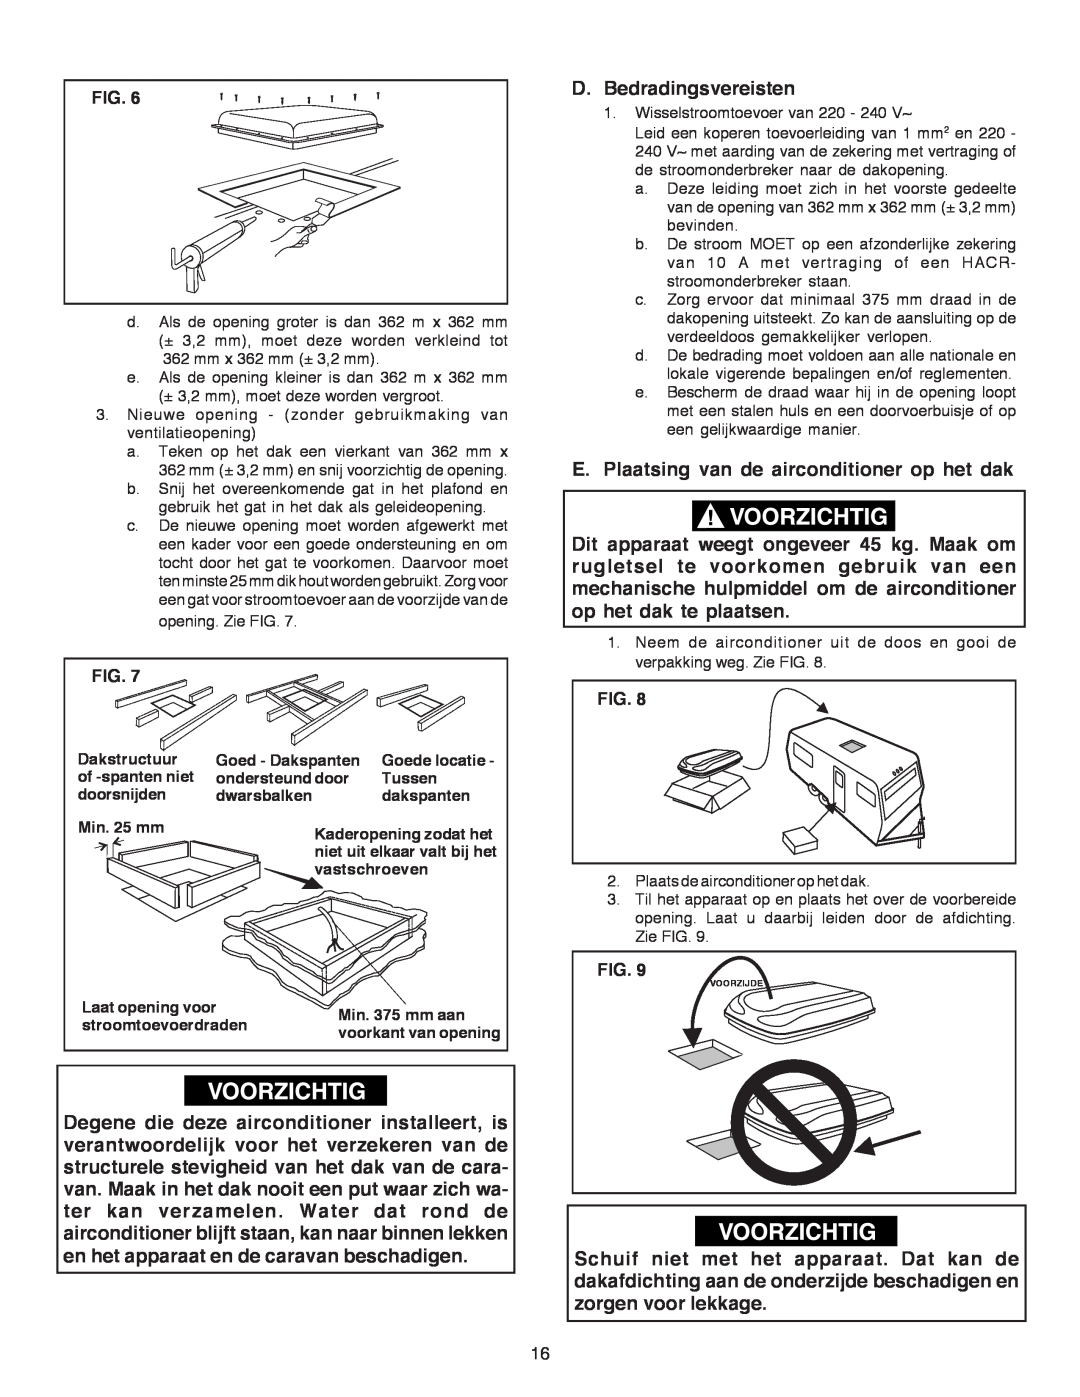 Dometic B3200 manual D.Bedradingsvereisten, E.Plaatsing van de airconditioner op het dak, Fig 